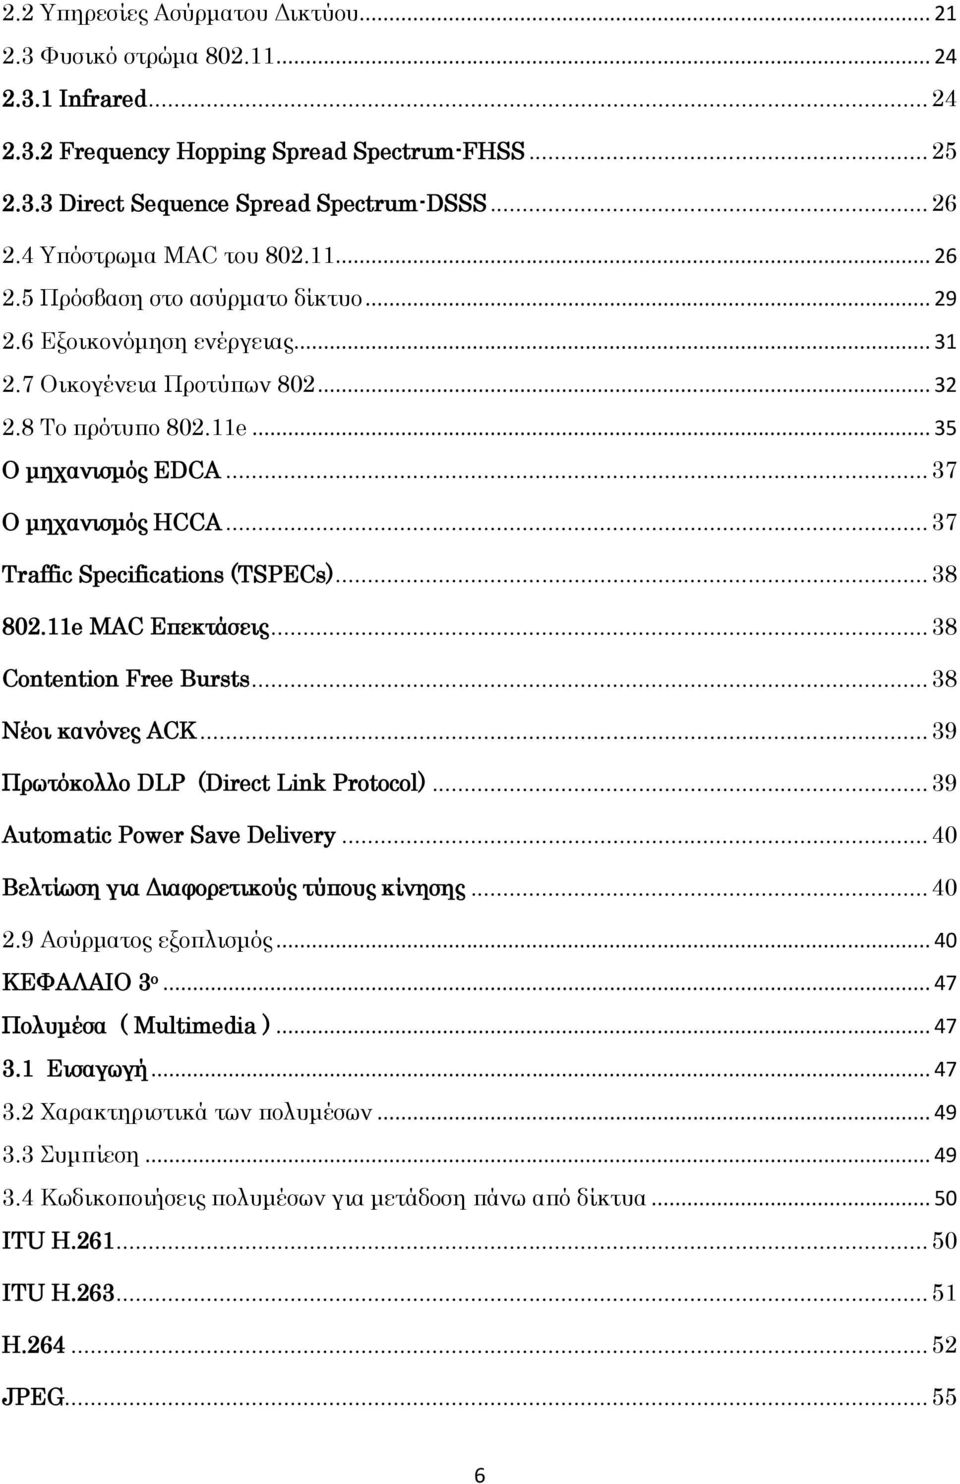 .. 37 Ο μηχανισμός HCCA... 37 Traffic Specifications (TSPECs)... 38 802.11e MAC Επεκτάσεις... 38 Contention Free Bursts... 38 Νέοι κανόνες ACK... 39 Πρωτόκολλο DLP (Direct Link Protocol).